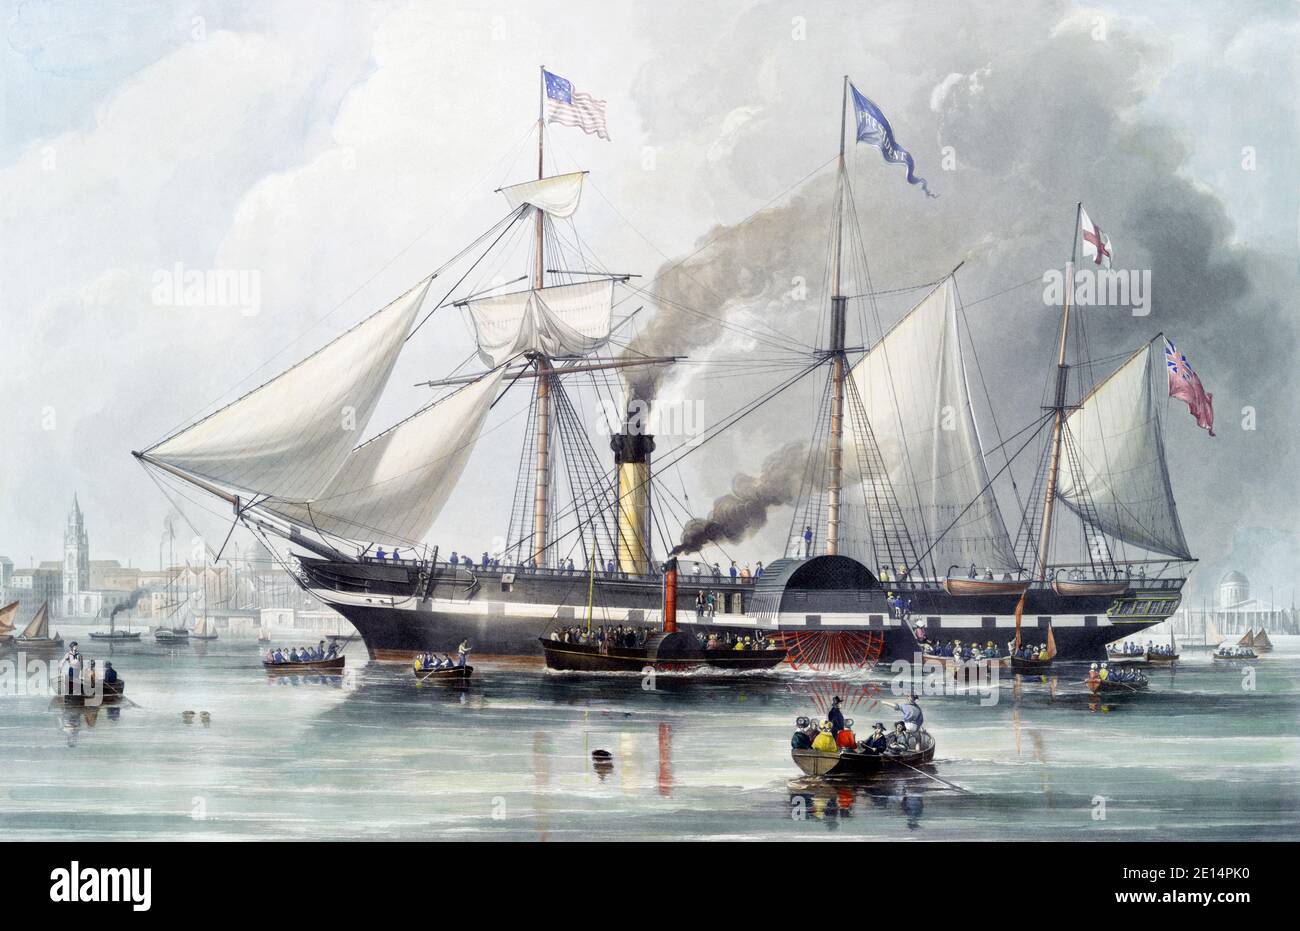 Il Presidente Steam Ship. Dopo un'incisione di R.G e A.W. Reeve pubblicato nel 1840 da un dipinto di Samuel Walters. Il presidente britannico delle SS di linea passeggeri era la nave più grande del mondo. Fu persa in mare con tutti a bordo nel 1841. Foto Stock